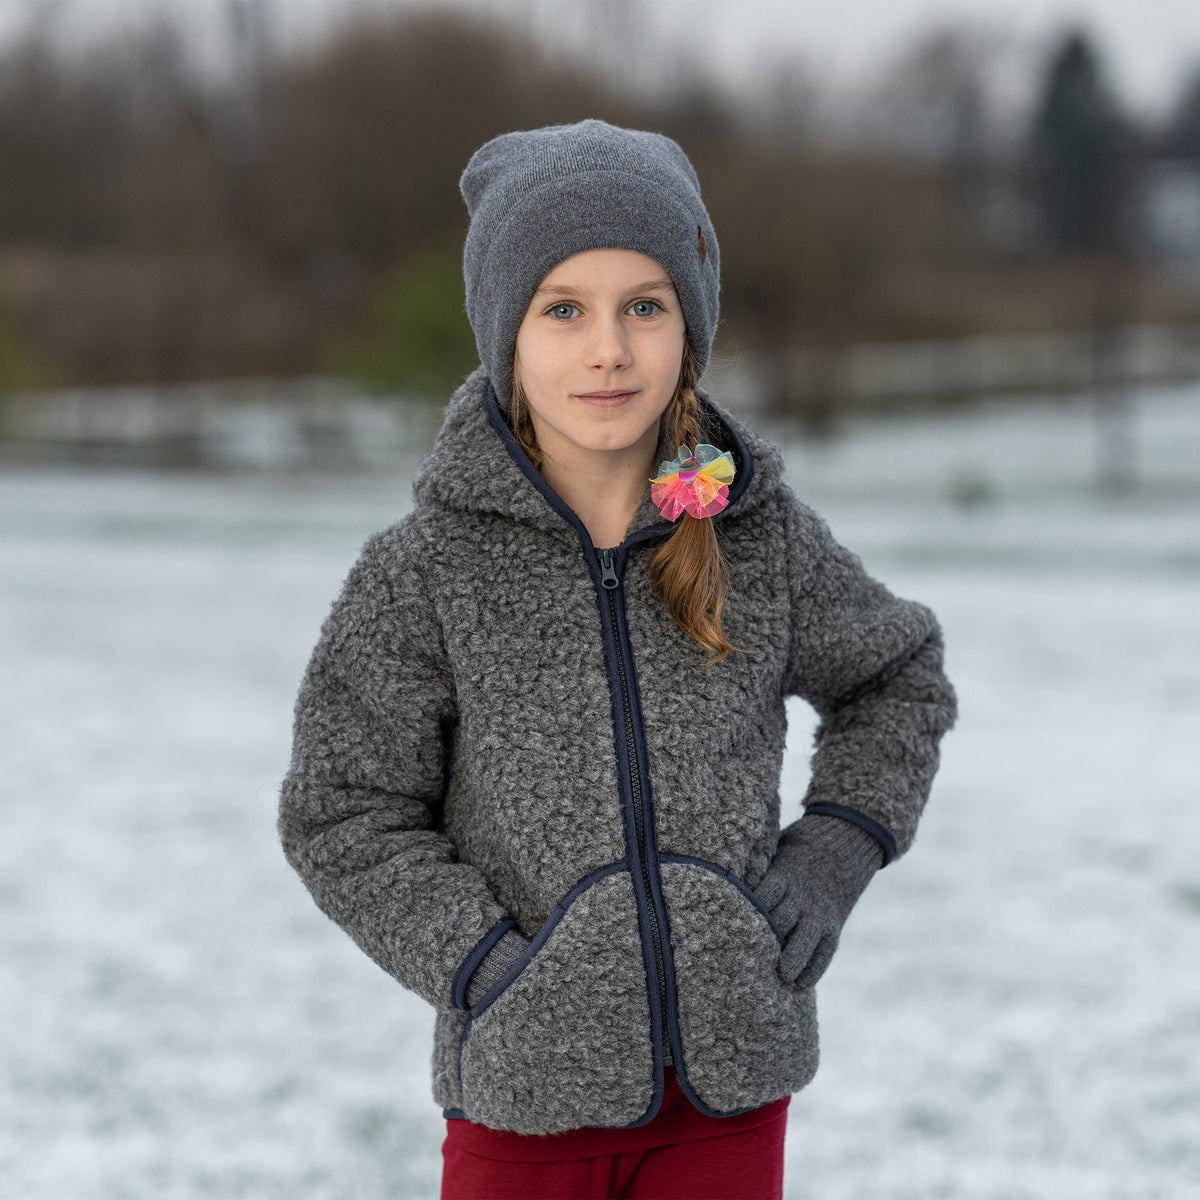 Winter Children's Overcoat Girls Plaid One-piece Fleece Wollen